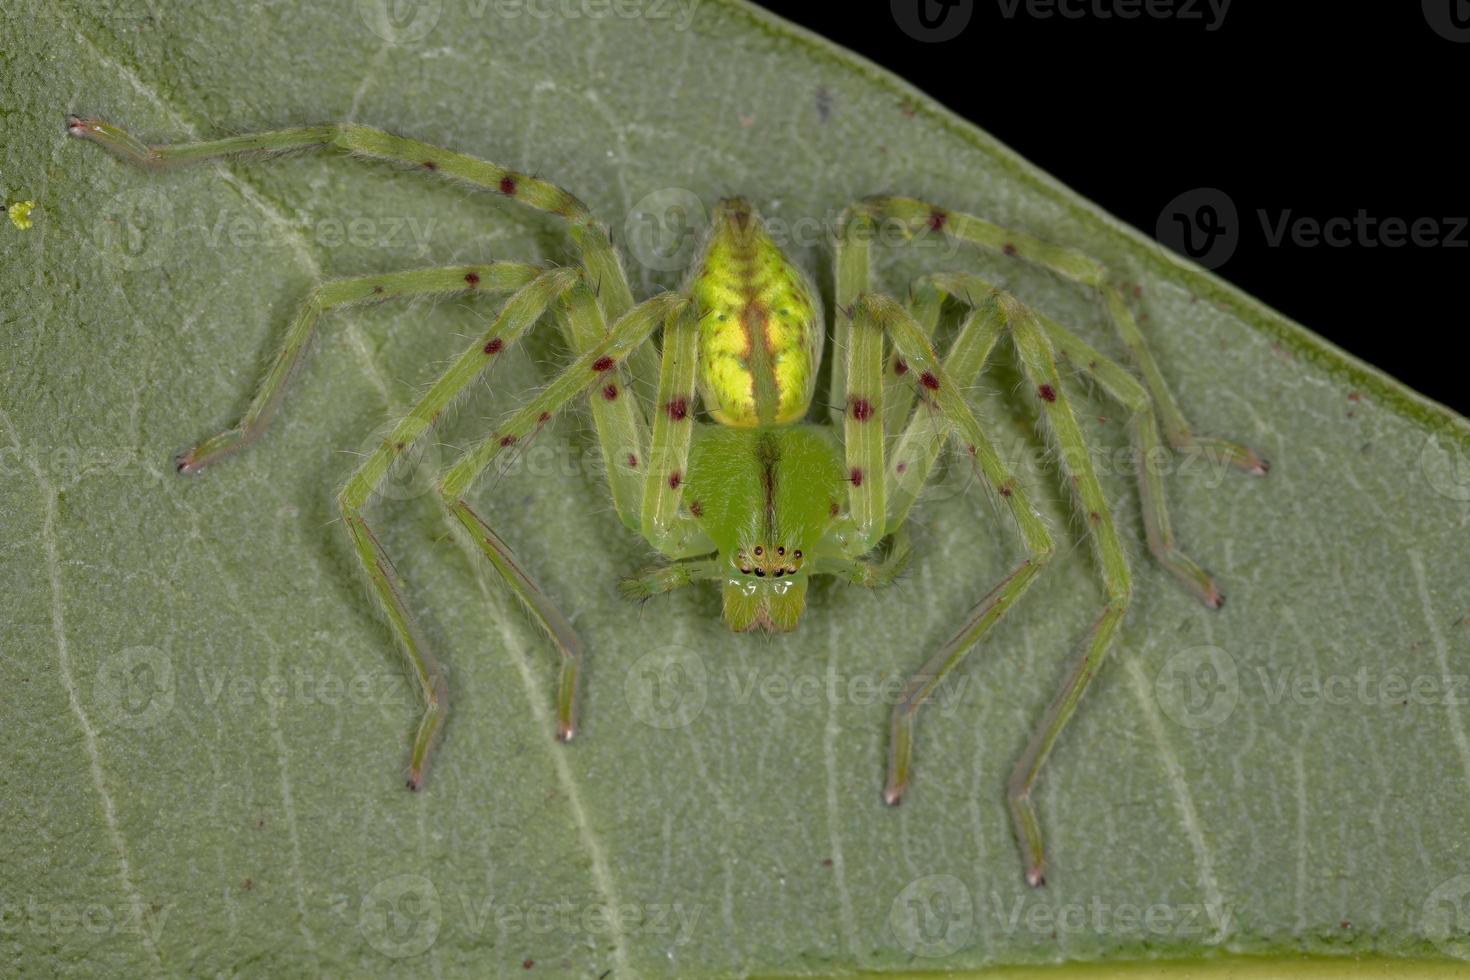 ragno cacciatore verde foto